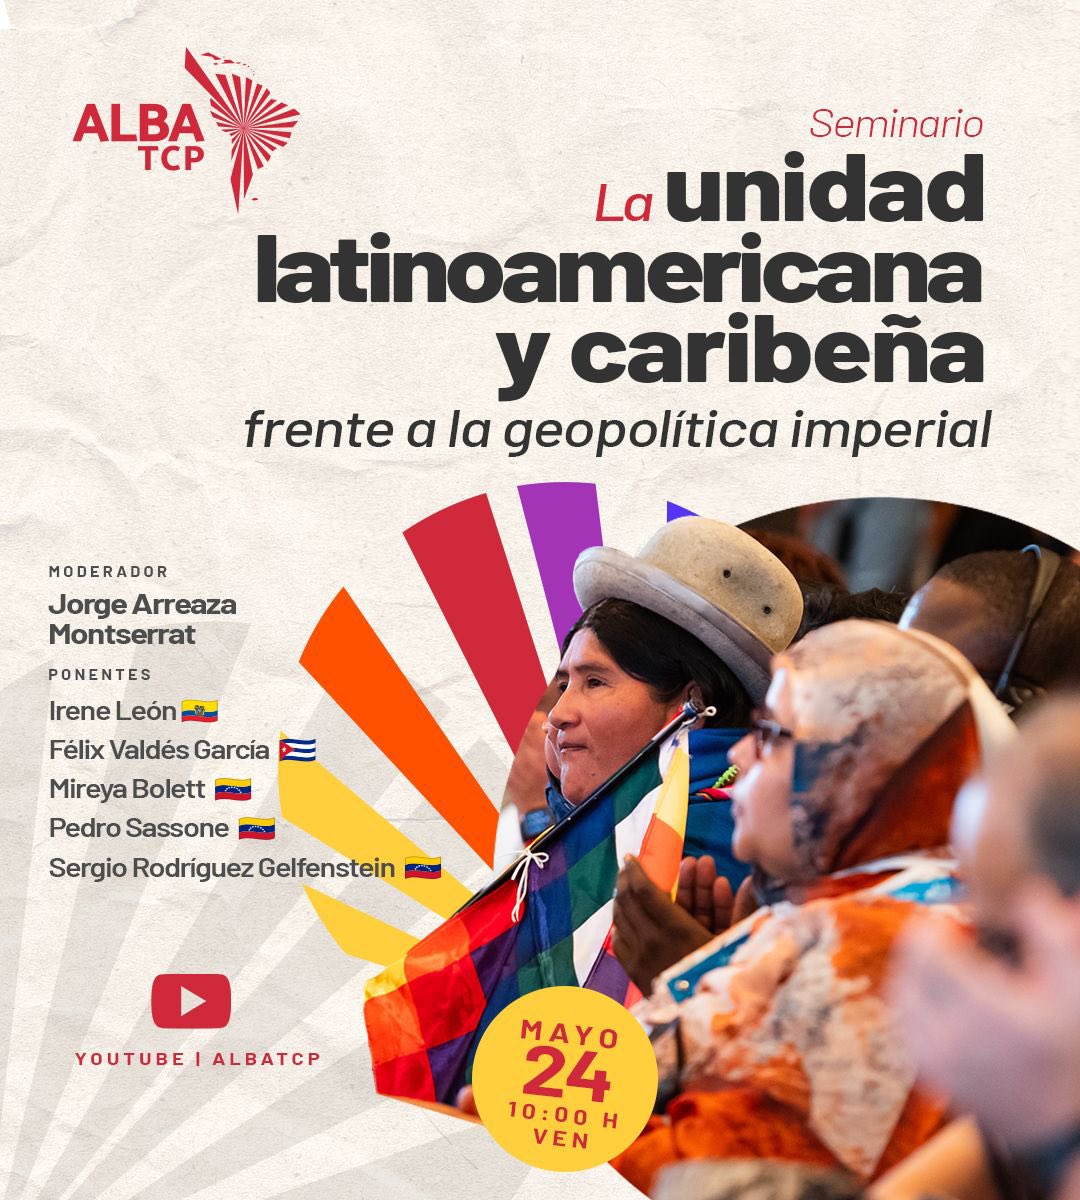 🗣 Intelectuales de Nuestra América comparten sus reflexiones sobre “La unidad latinoamericana y caribeña frente a la geopolítica imperial”. ¡No te lo pierdas! 🗓️ Viernes #24May ⏰ 10:00 a.m. 🇻🇪 💻 Canal YouTube ALBA-TCP